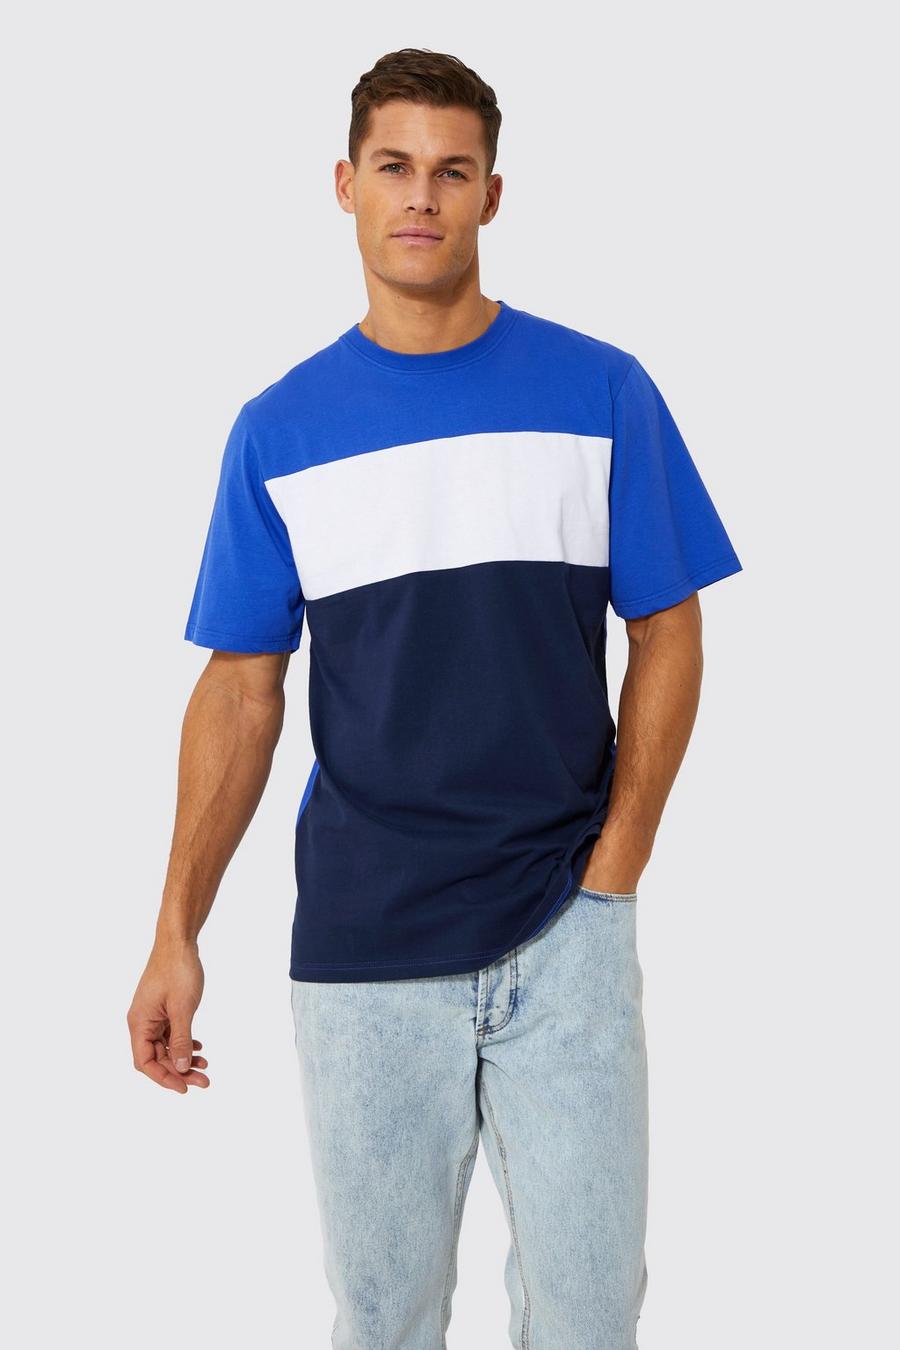 Camiseta Plus Con Colores En Bloque Boohoo de Denim de color Azul Mujer Ropa de Trajes de 